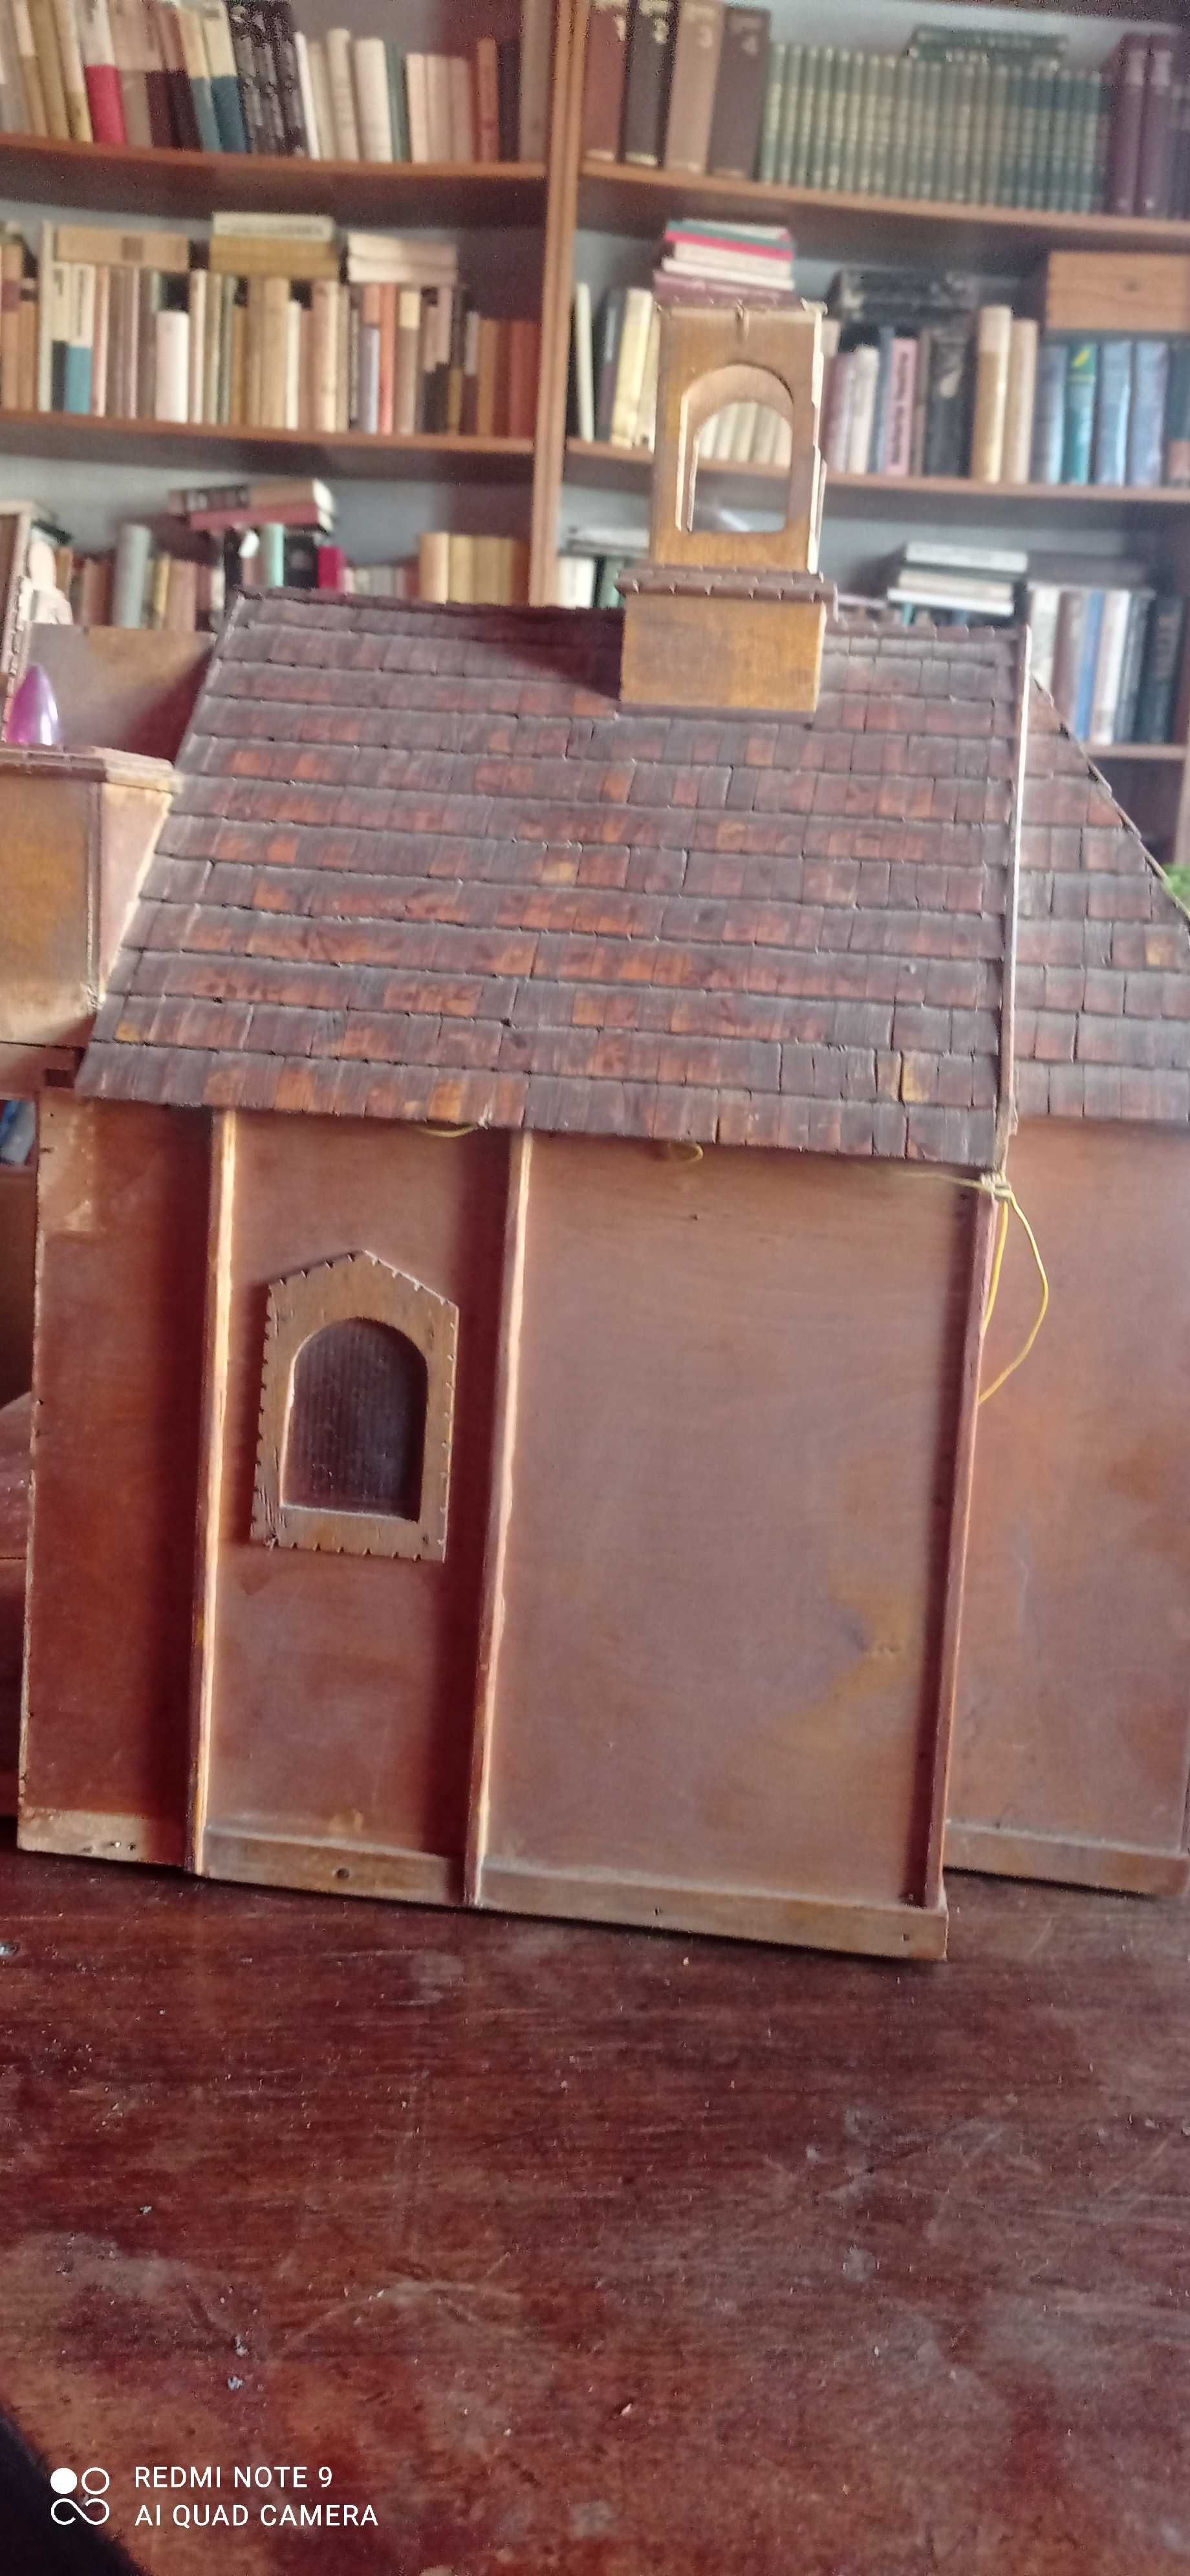 Makieta kościoła z drewna